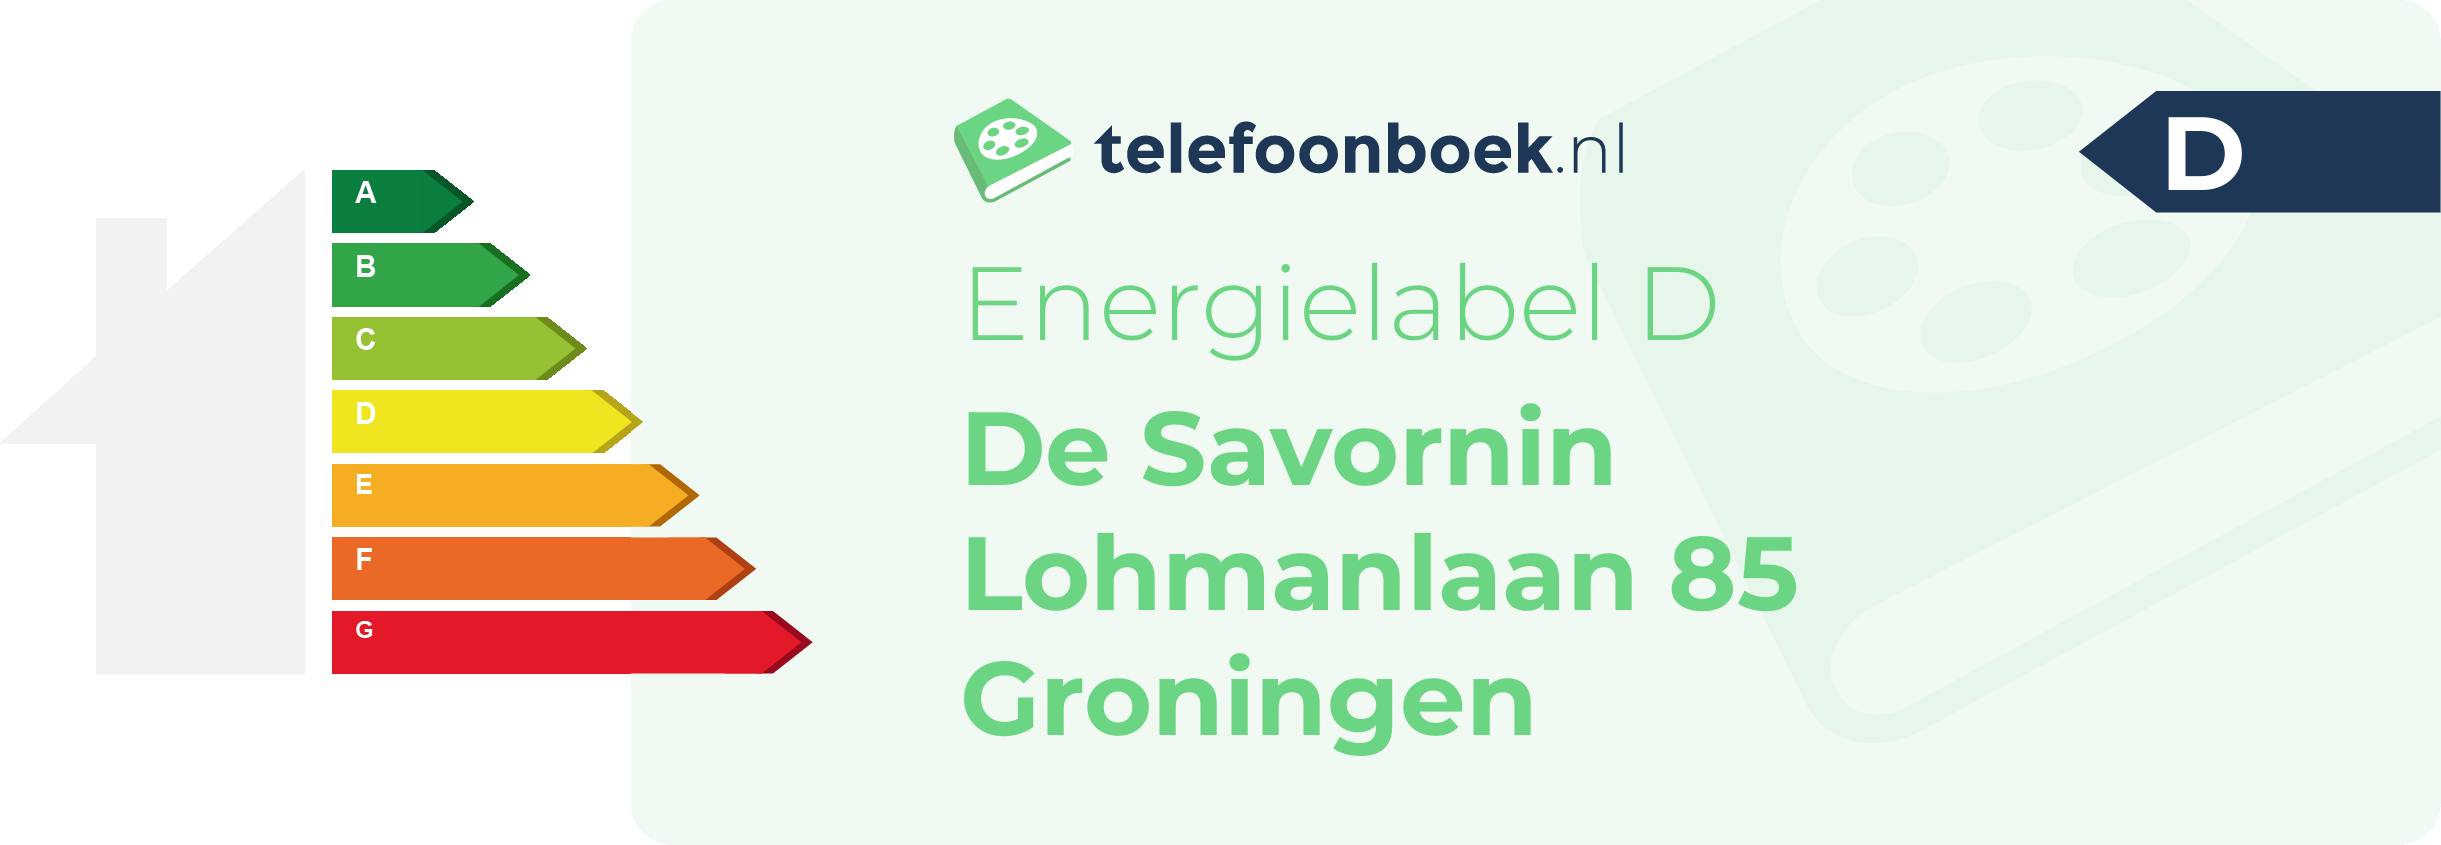 Energielabel De Savornin Lohmanlaan 85 Groningen